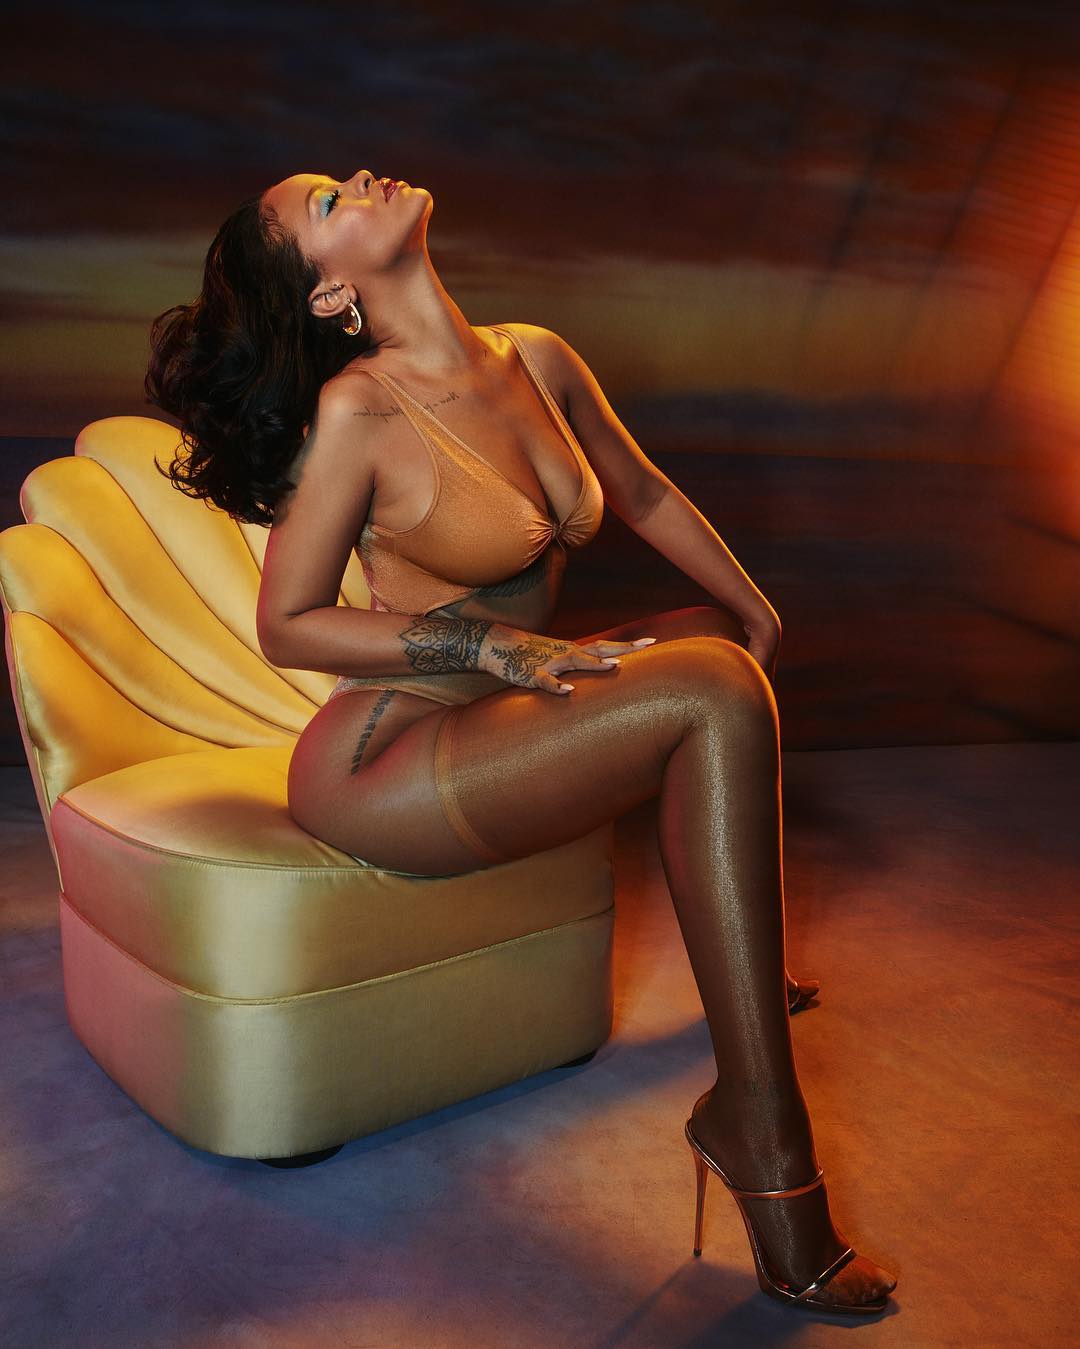 hình ảnh nóng bỏng của nữ ca sĩ đình đám Rihanna ảnh 8